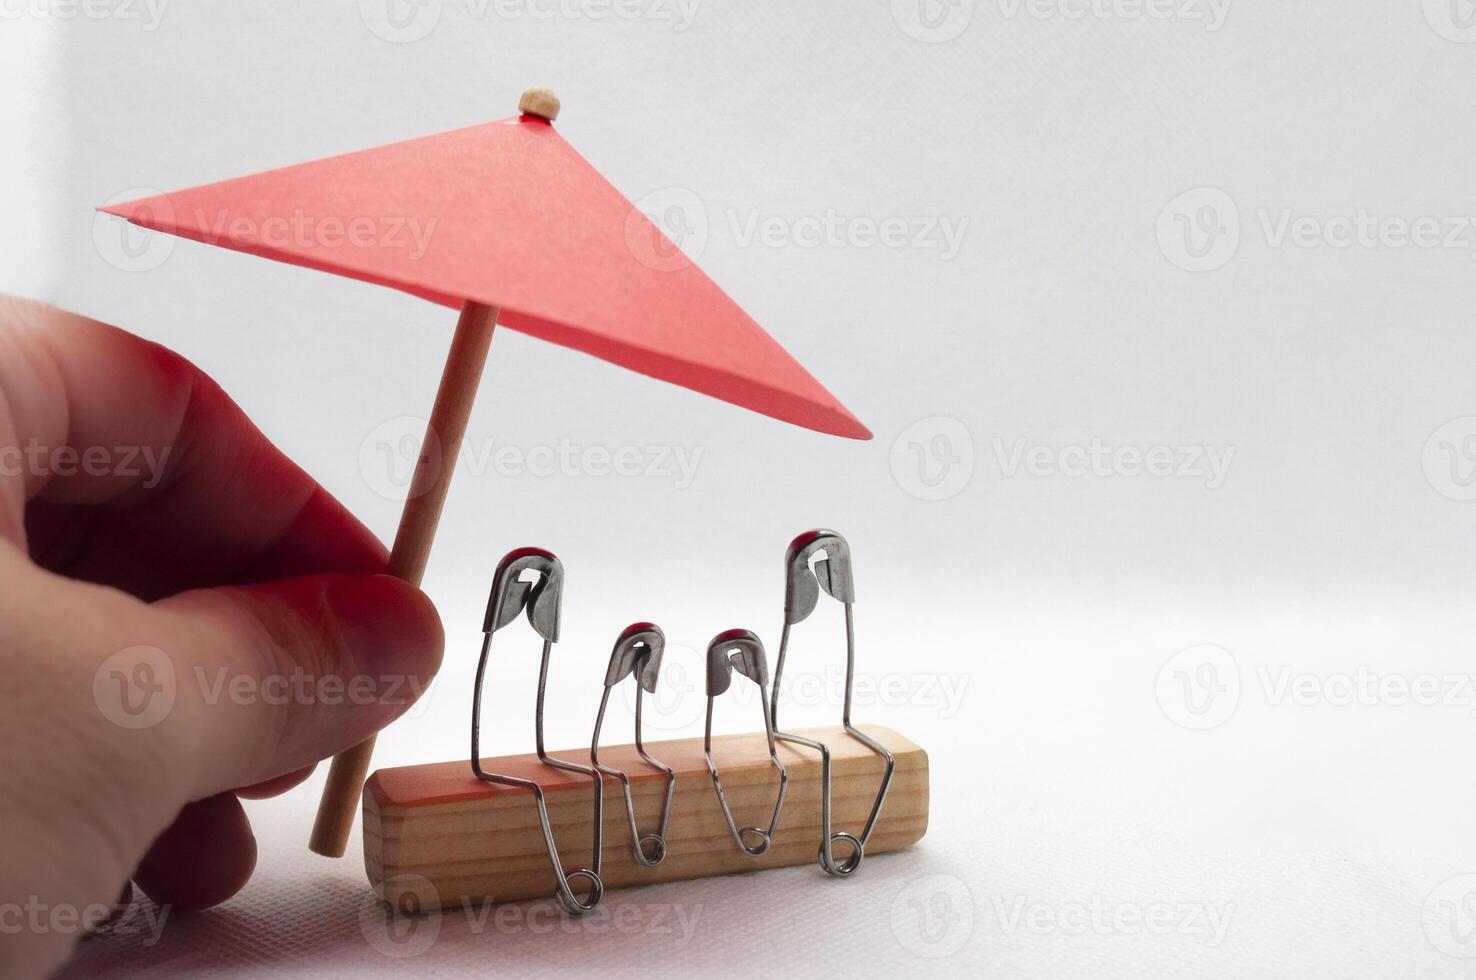 Modell- Sicherheit Stift von Familie Sitzung auf hölzern Block mit rot Regenschirm Hintergrund. Versicherung Konzept foto